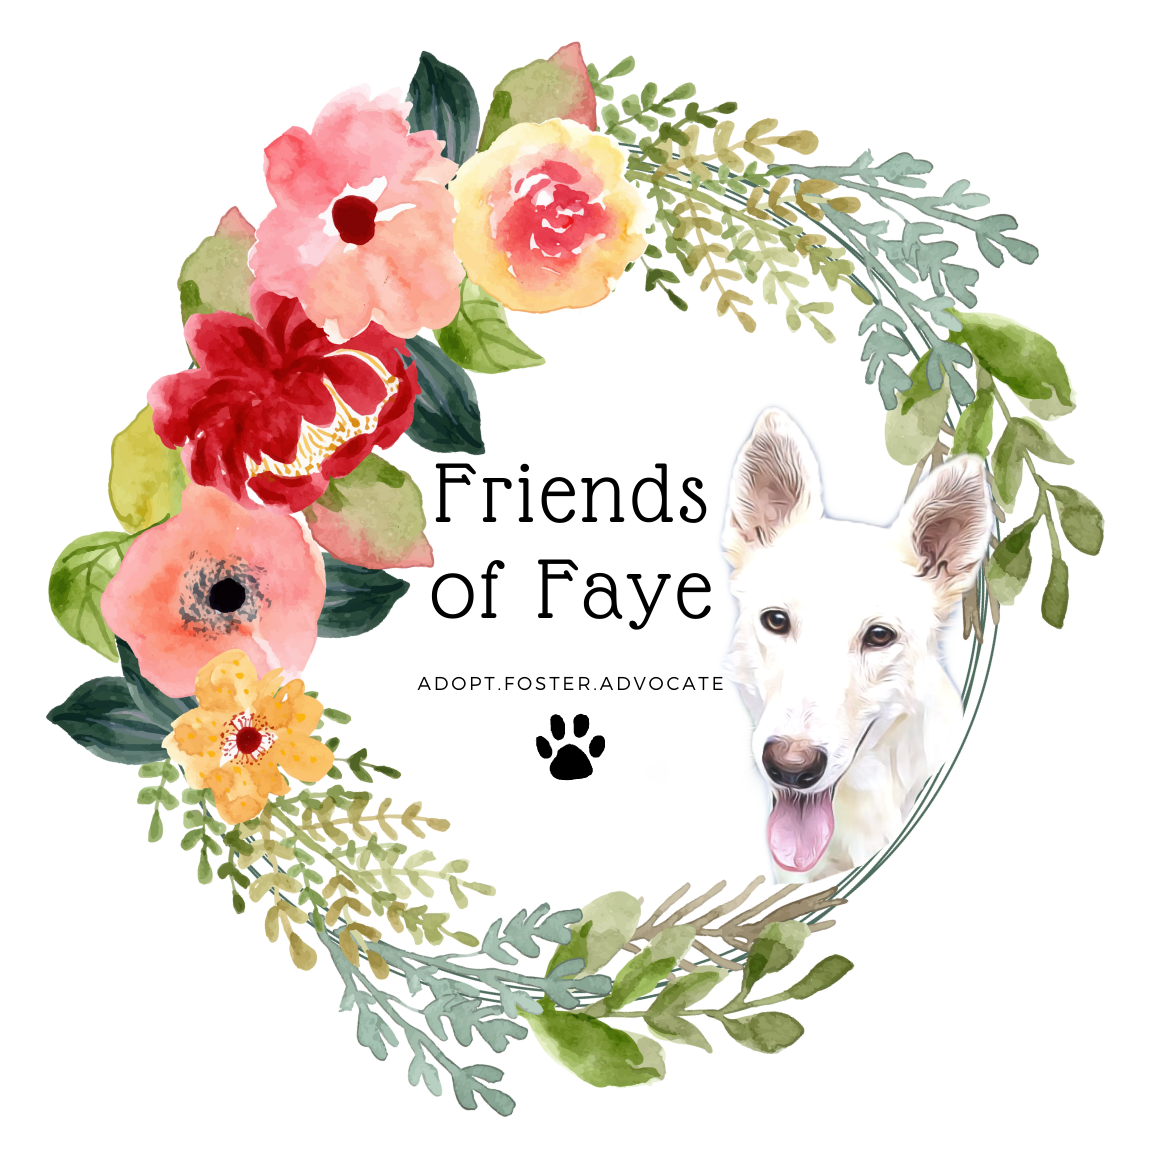 Friends of Faye